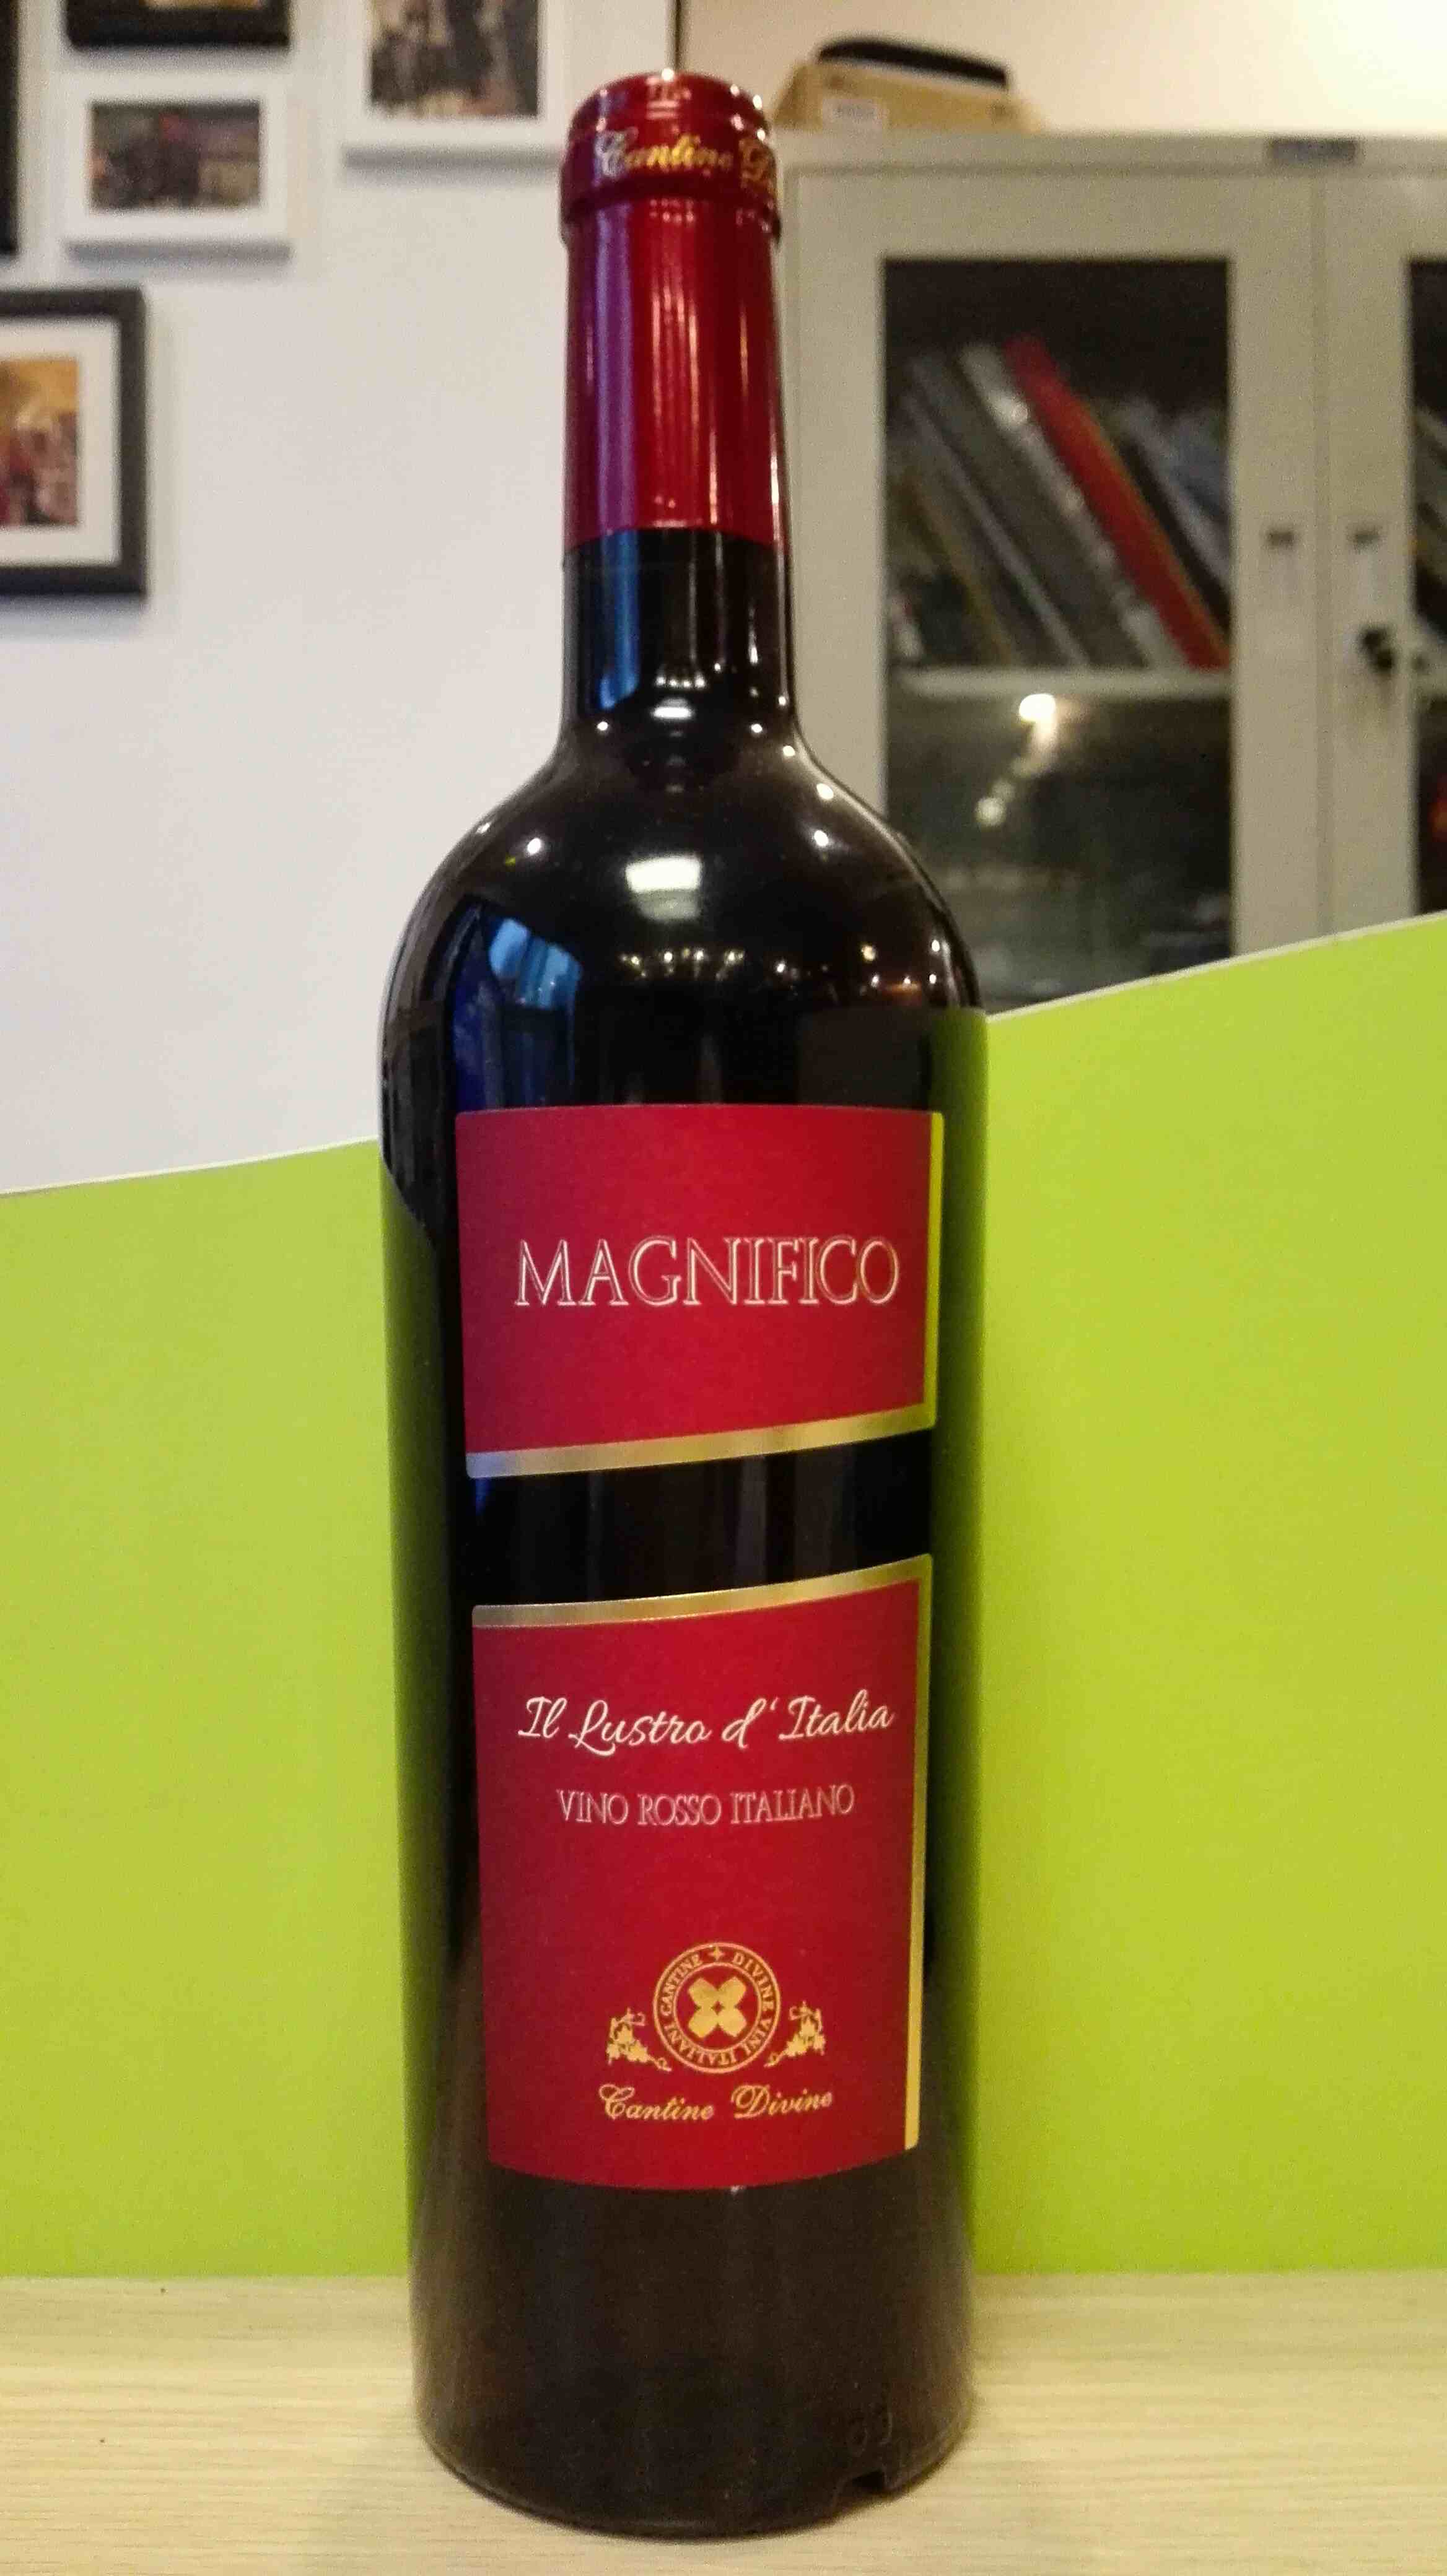 NV Magnifico Vino Rosso Italiano 玛尼菲科红葡